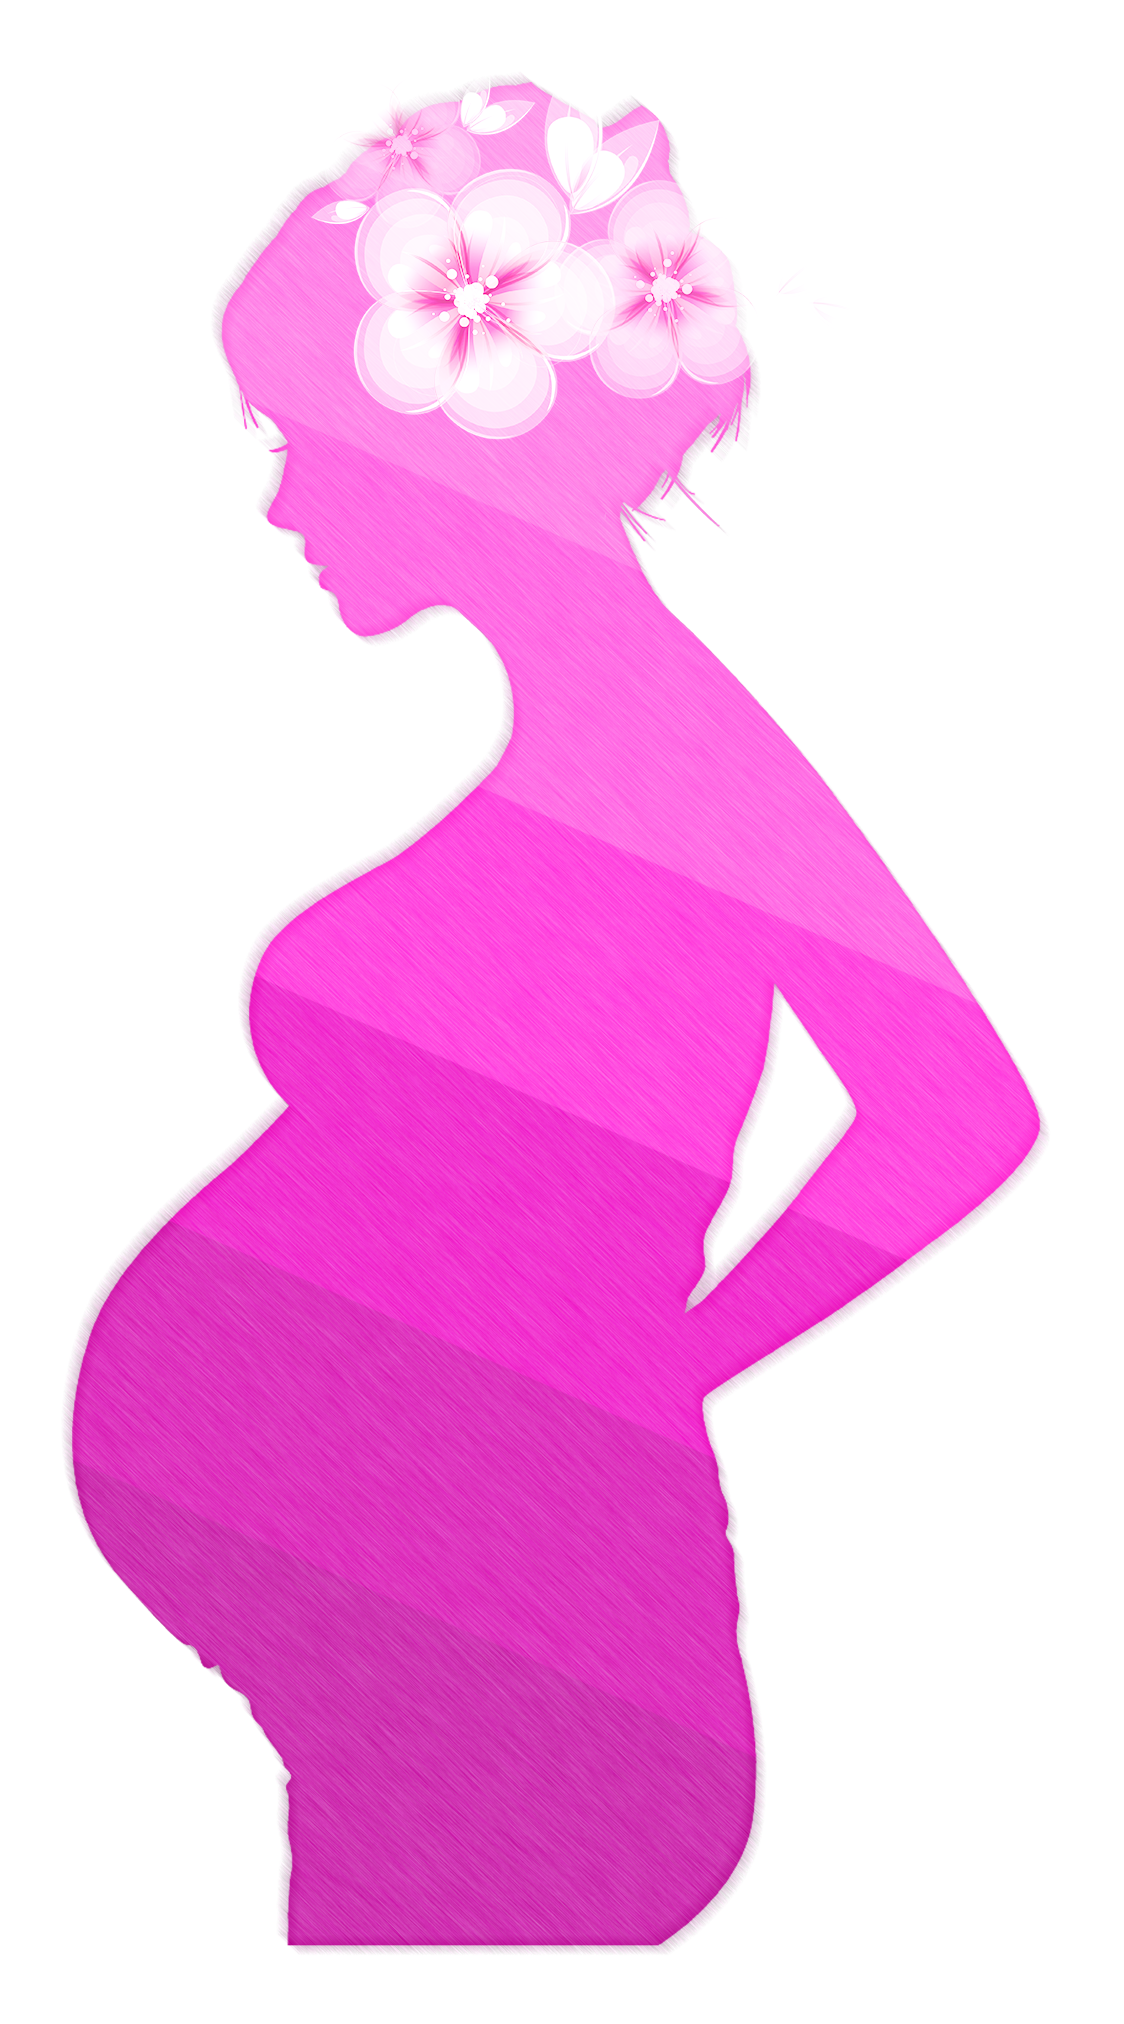 Pregnant-Women-Shouldn't-Ignore 